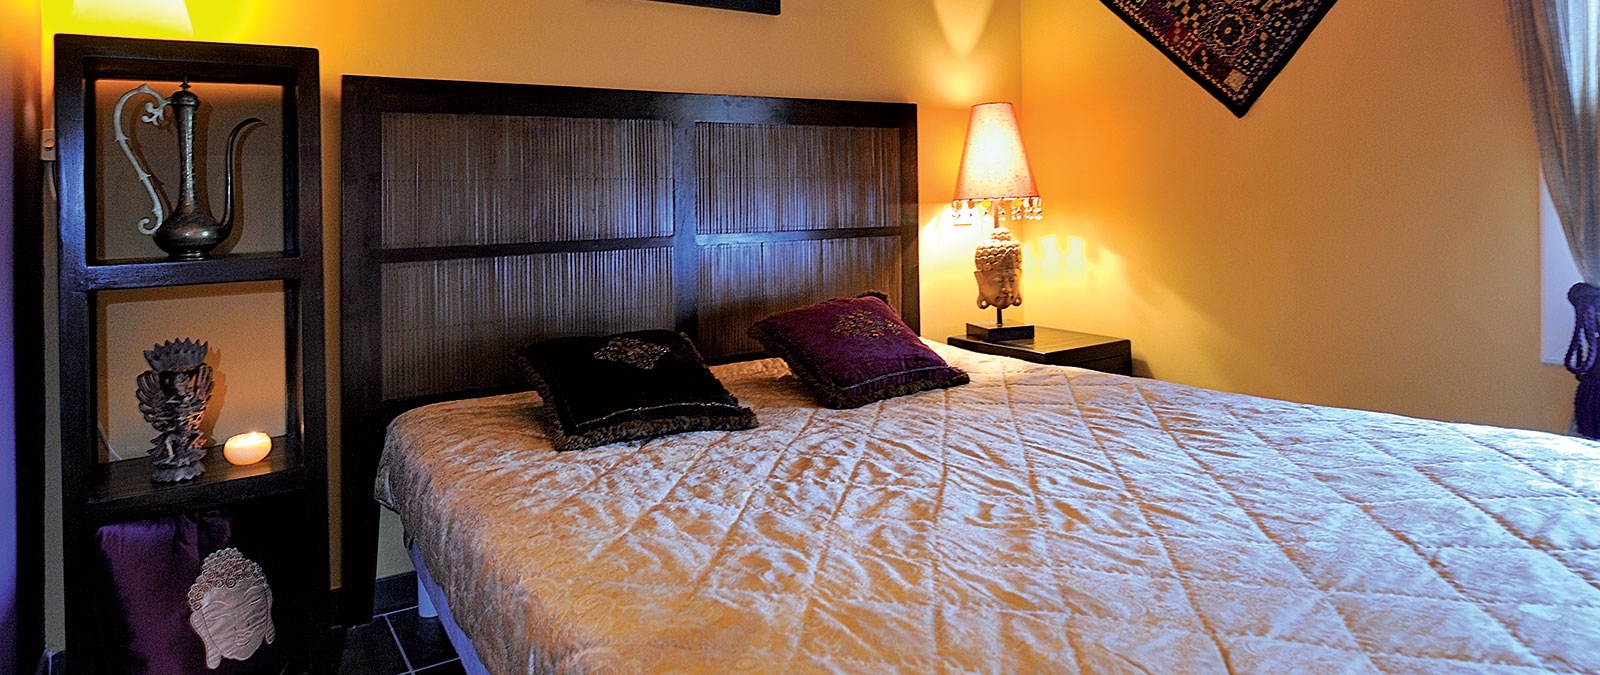 Bedroom with double bed Jaïpur naturist studio flat rental